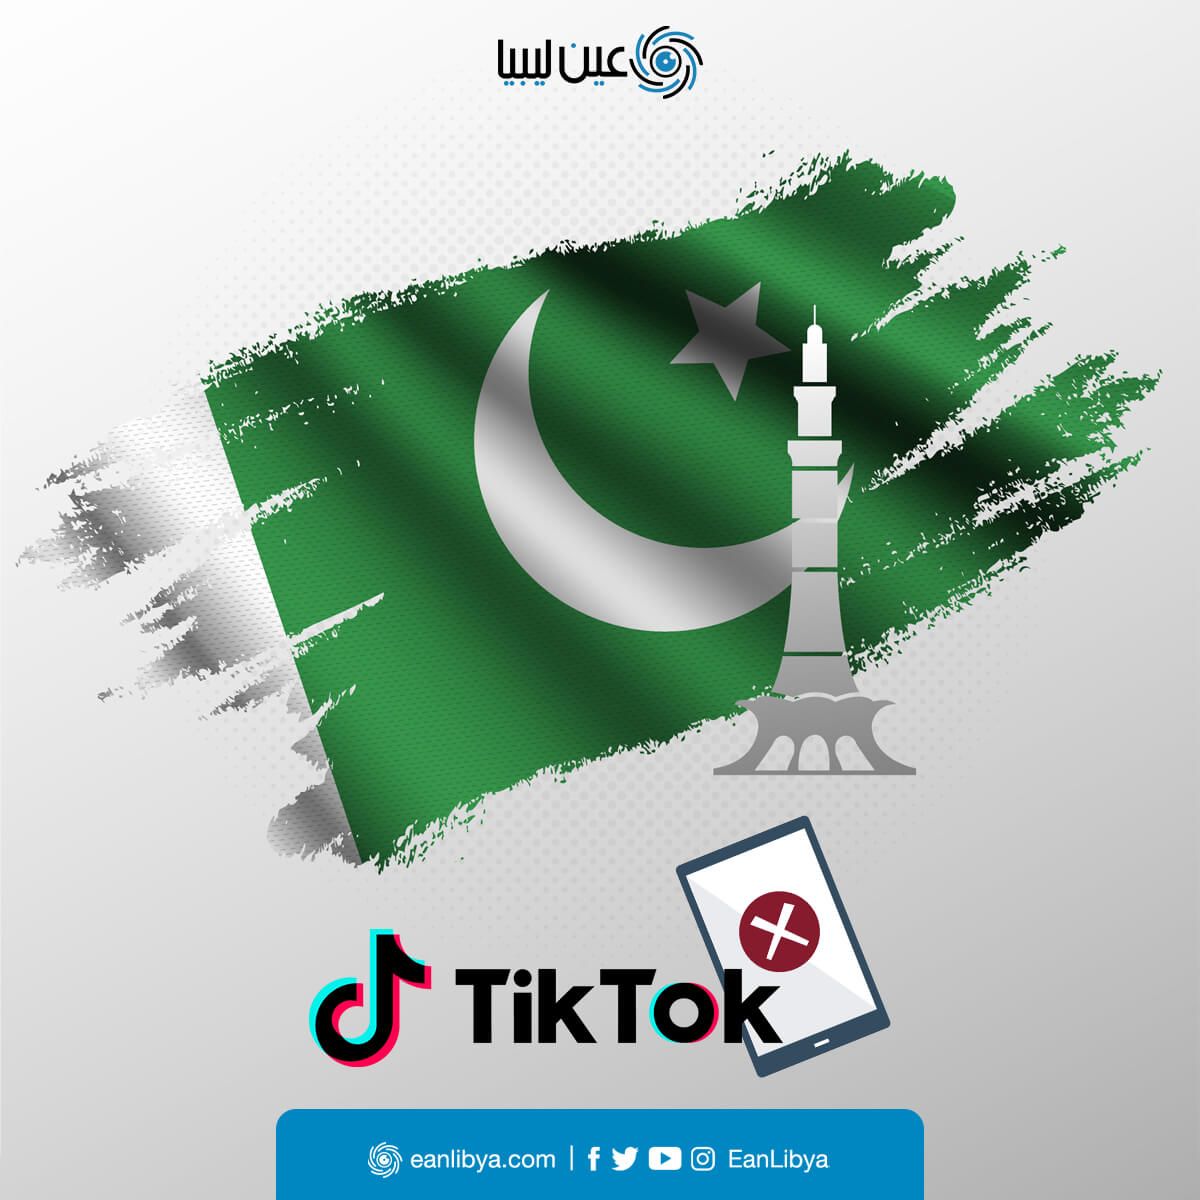 باكستان تقوم بحظر تطبيق تيك توك وتصفه بالمفسد لأخلاقيات المجتمع